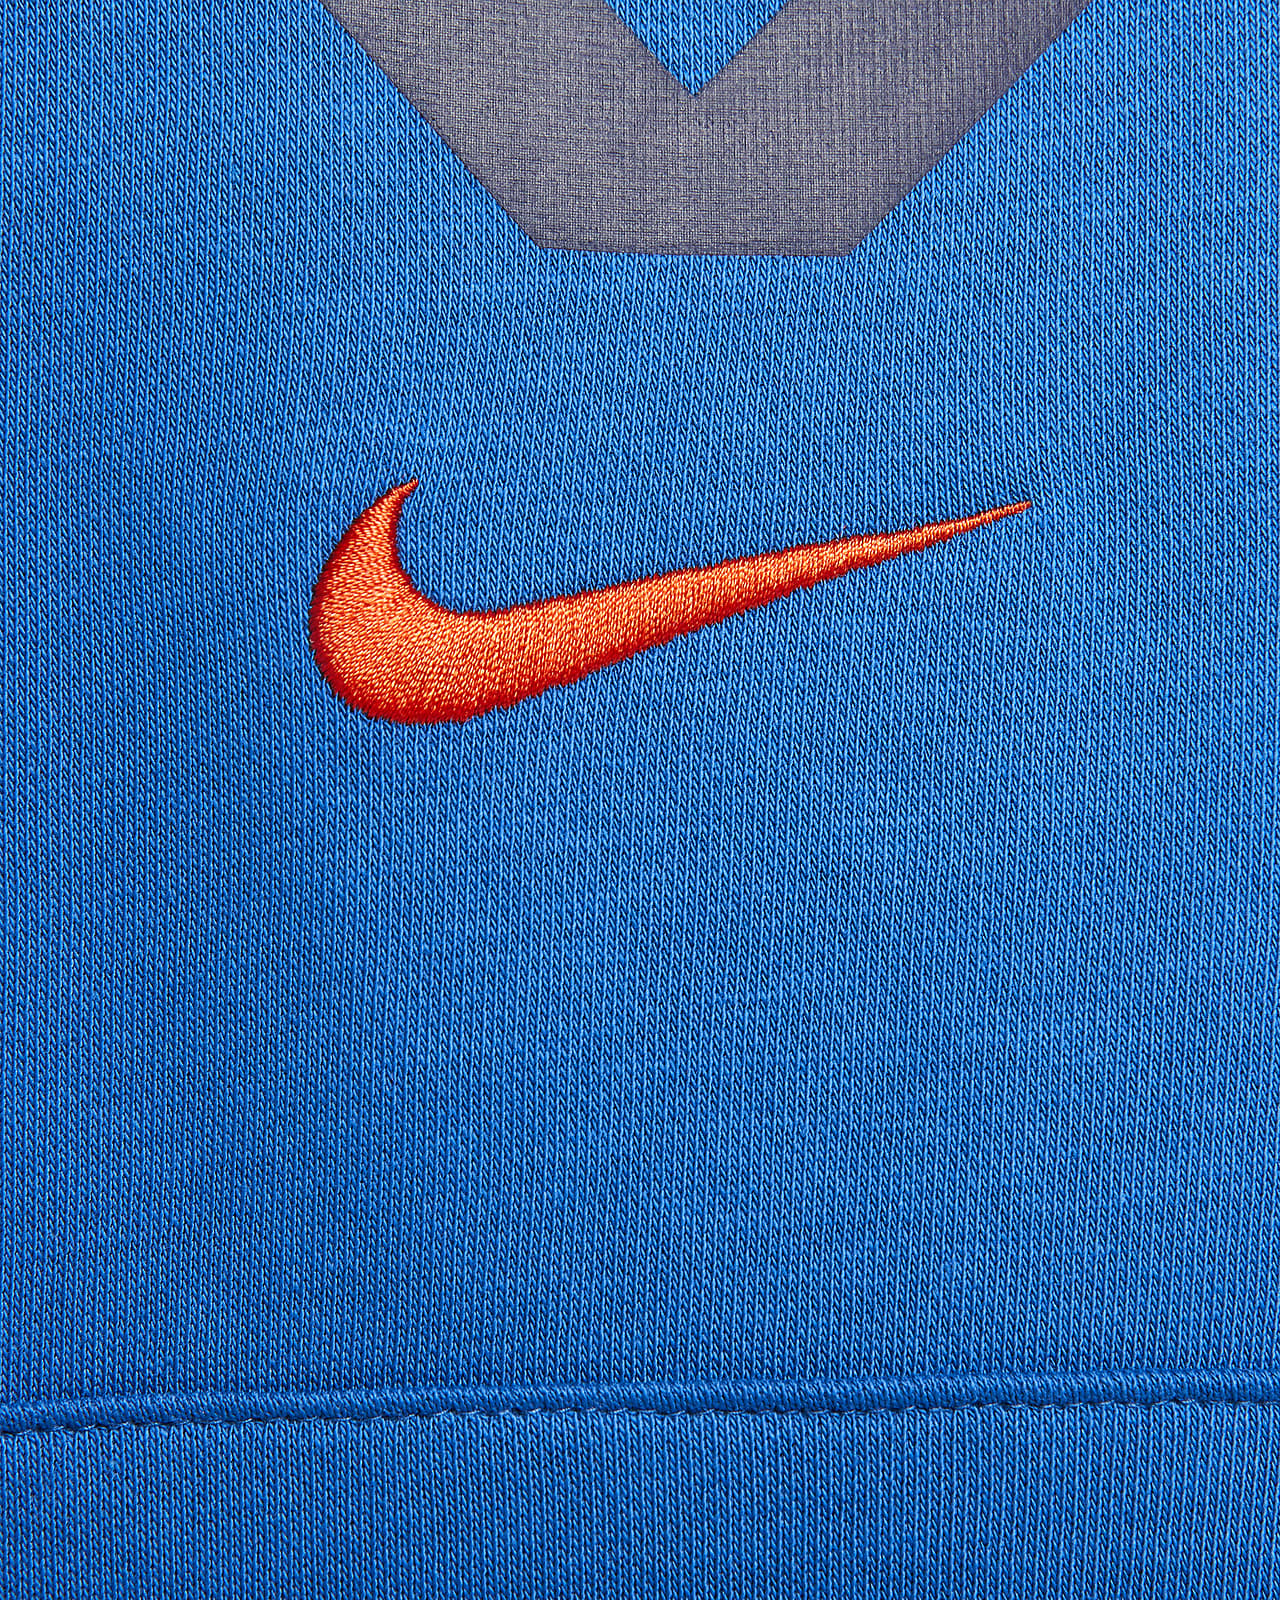 Exclusivité : Sweat à capuche club multi-logos noir homme - Nike